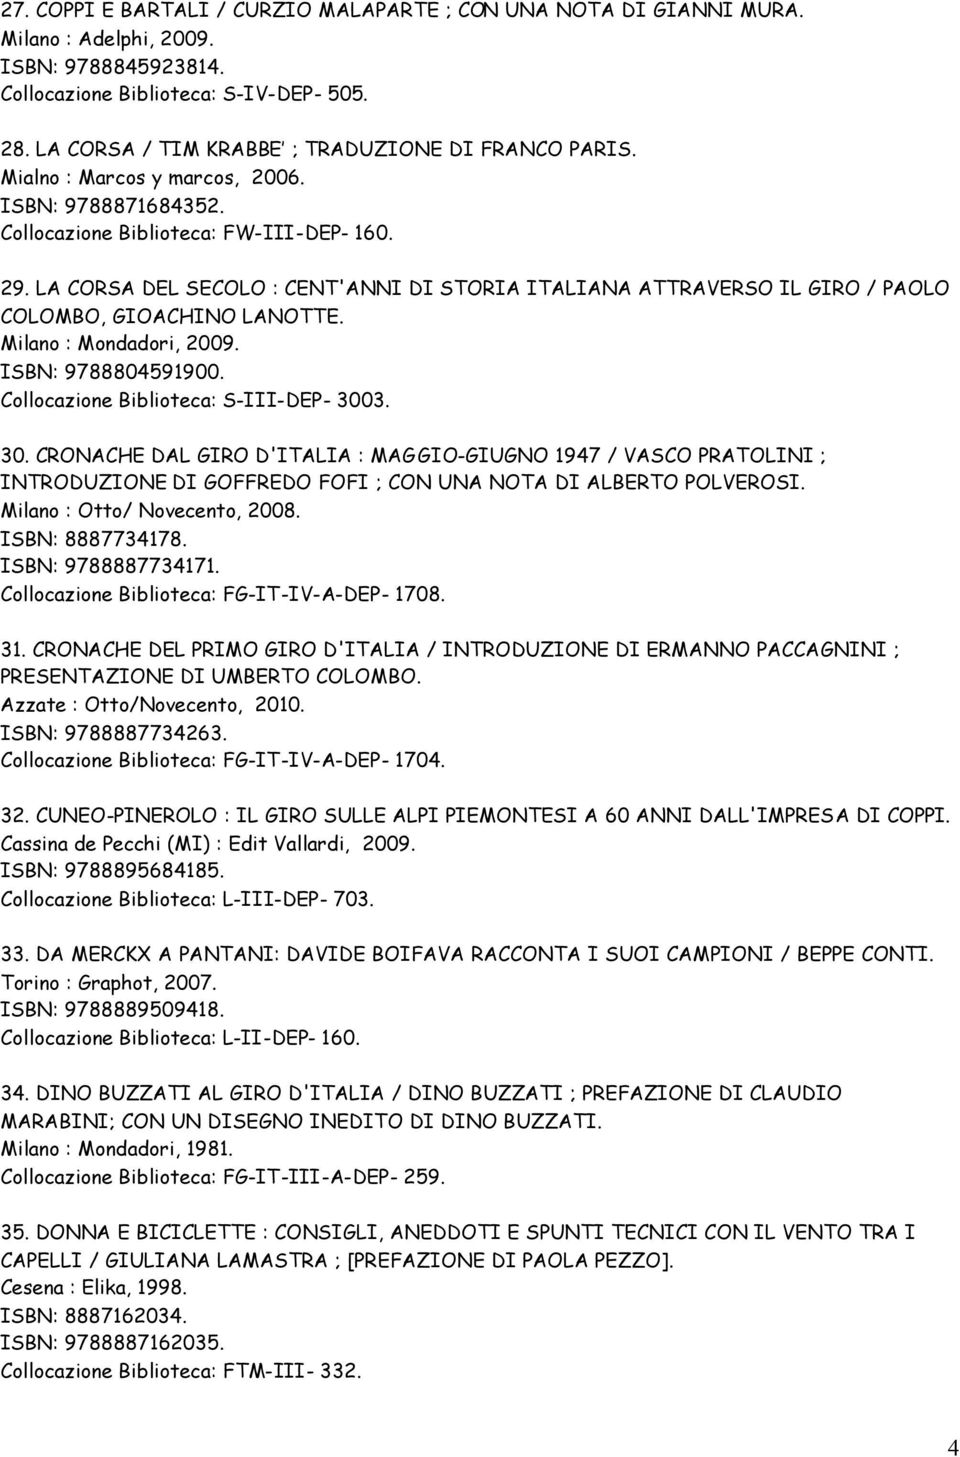 LA CORSA DEL SECOLO : CENT'ANNI DI STORIA ITALIANA ATTRAVERSO IL GIRO / PAOLO COLOMBO, GIOACHINO LANOTTE. Milano : Mondadori, 2009. ISBN: 9788804591900. Collocazione Biblioteca: S-III-DEP- 300